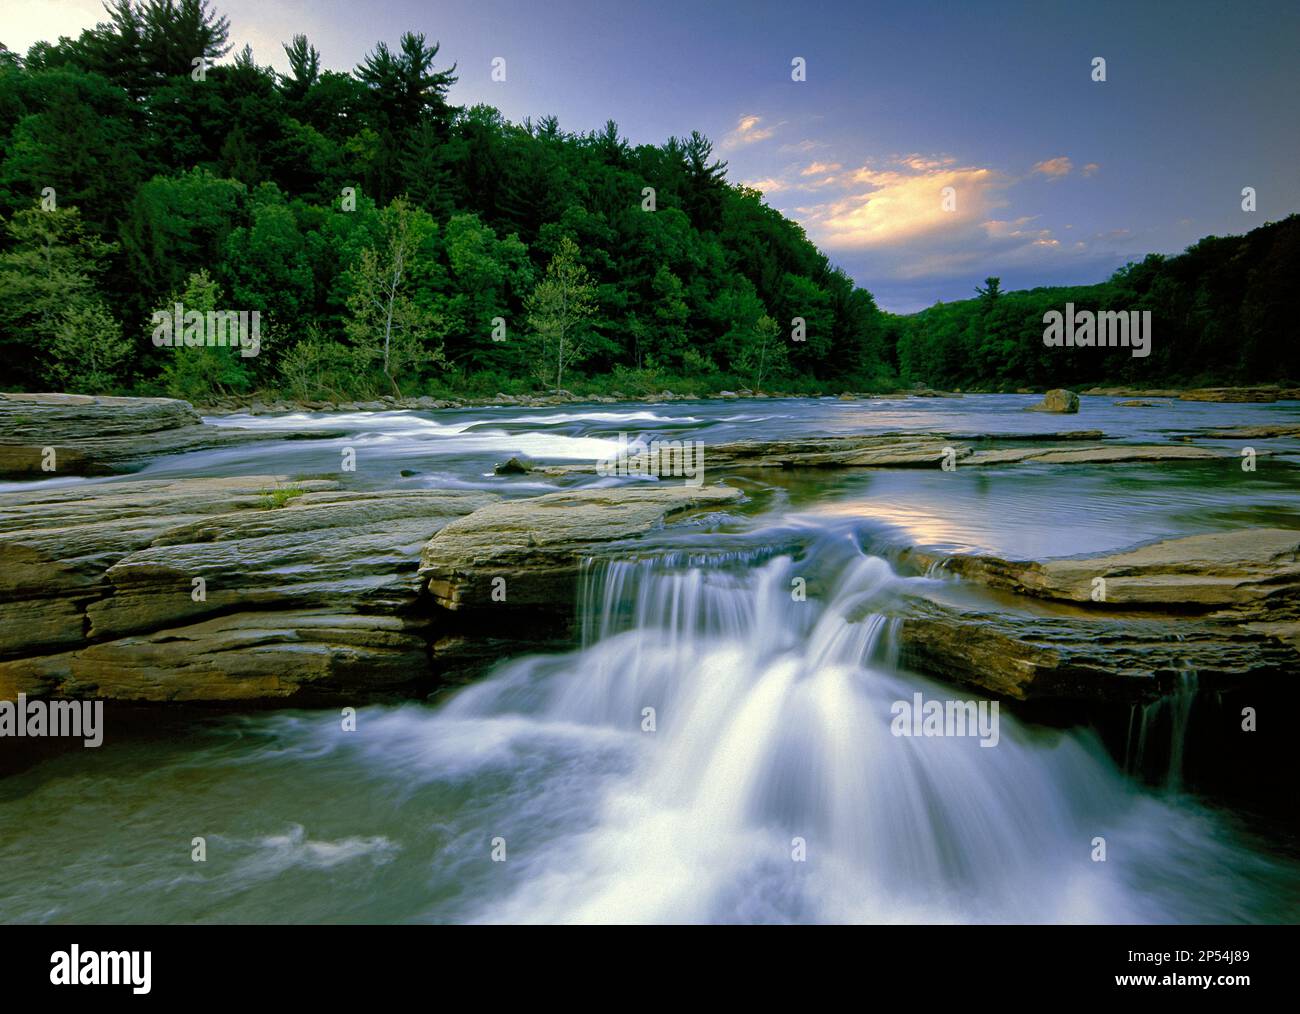 La rivière Youghiogheny, au parc national d'Ohiopyle, dans le comté de Fayette, en Pennsylvanie, est une rivière récréative populaire en eau vive. Banque D'Images